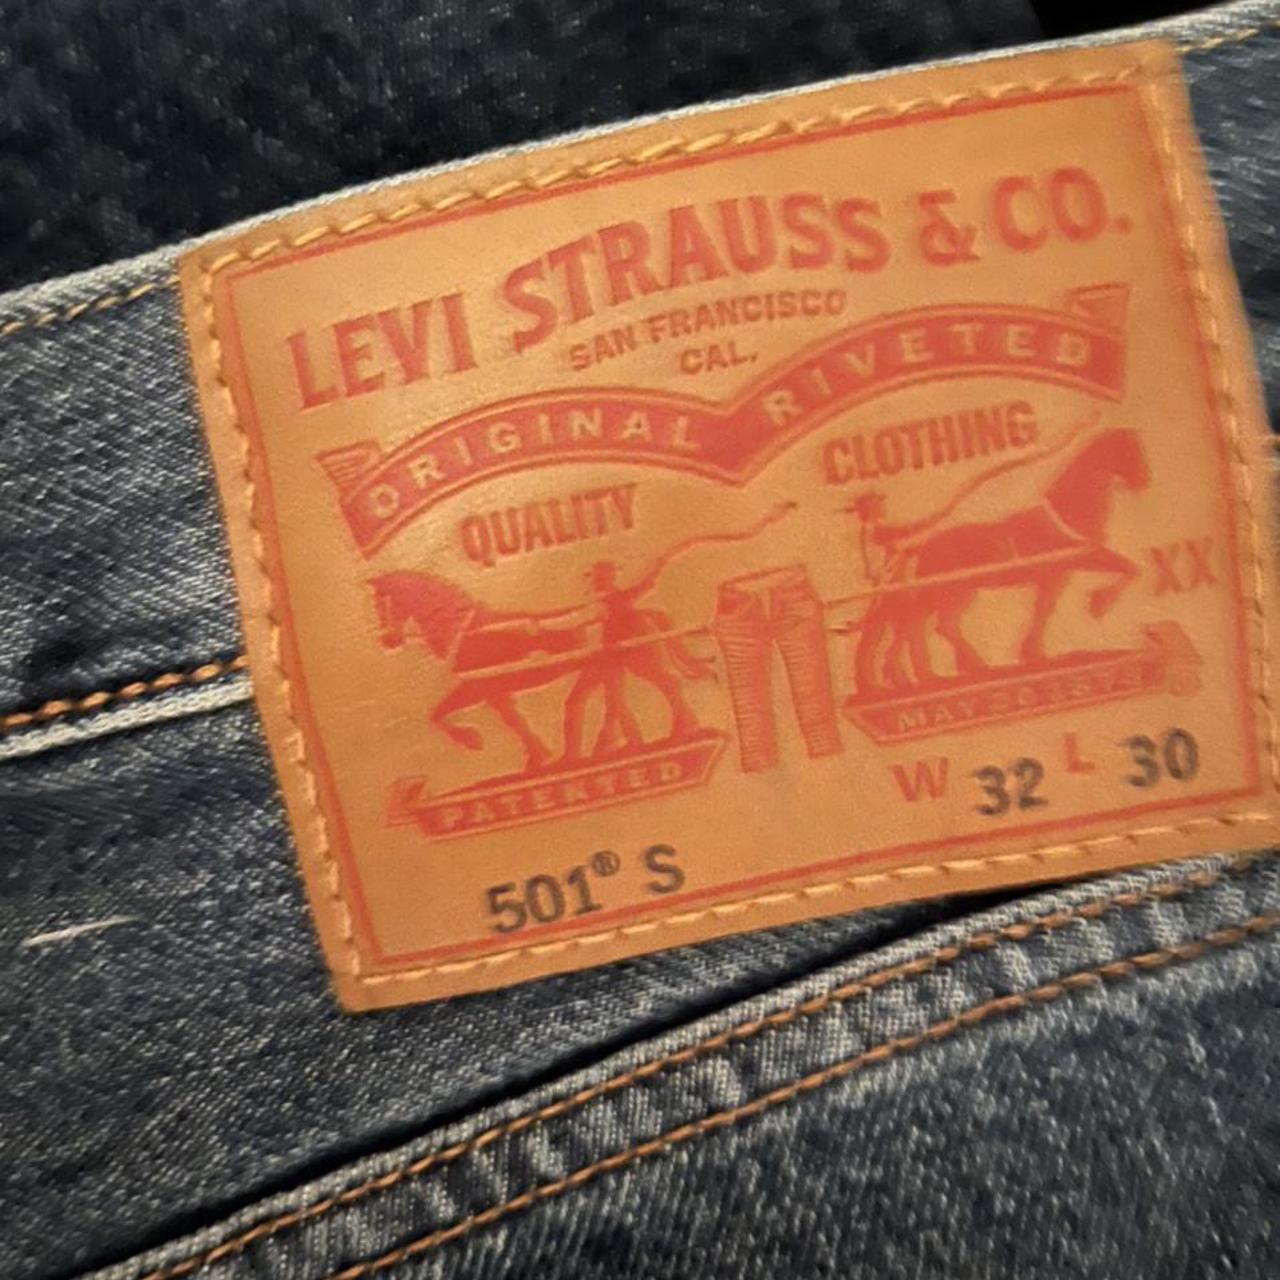 Blue Levi jeans 30w 32l Excellent condition #levijeans - Depop